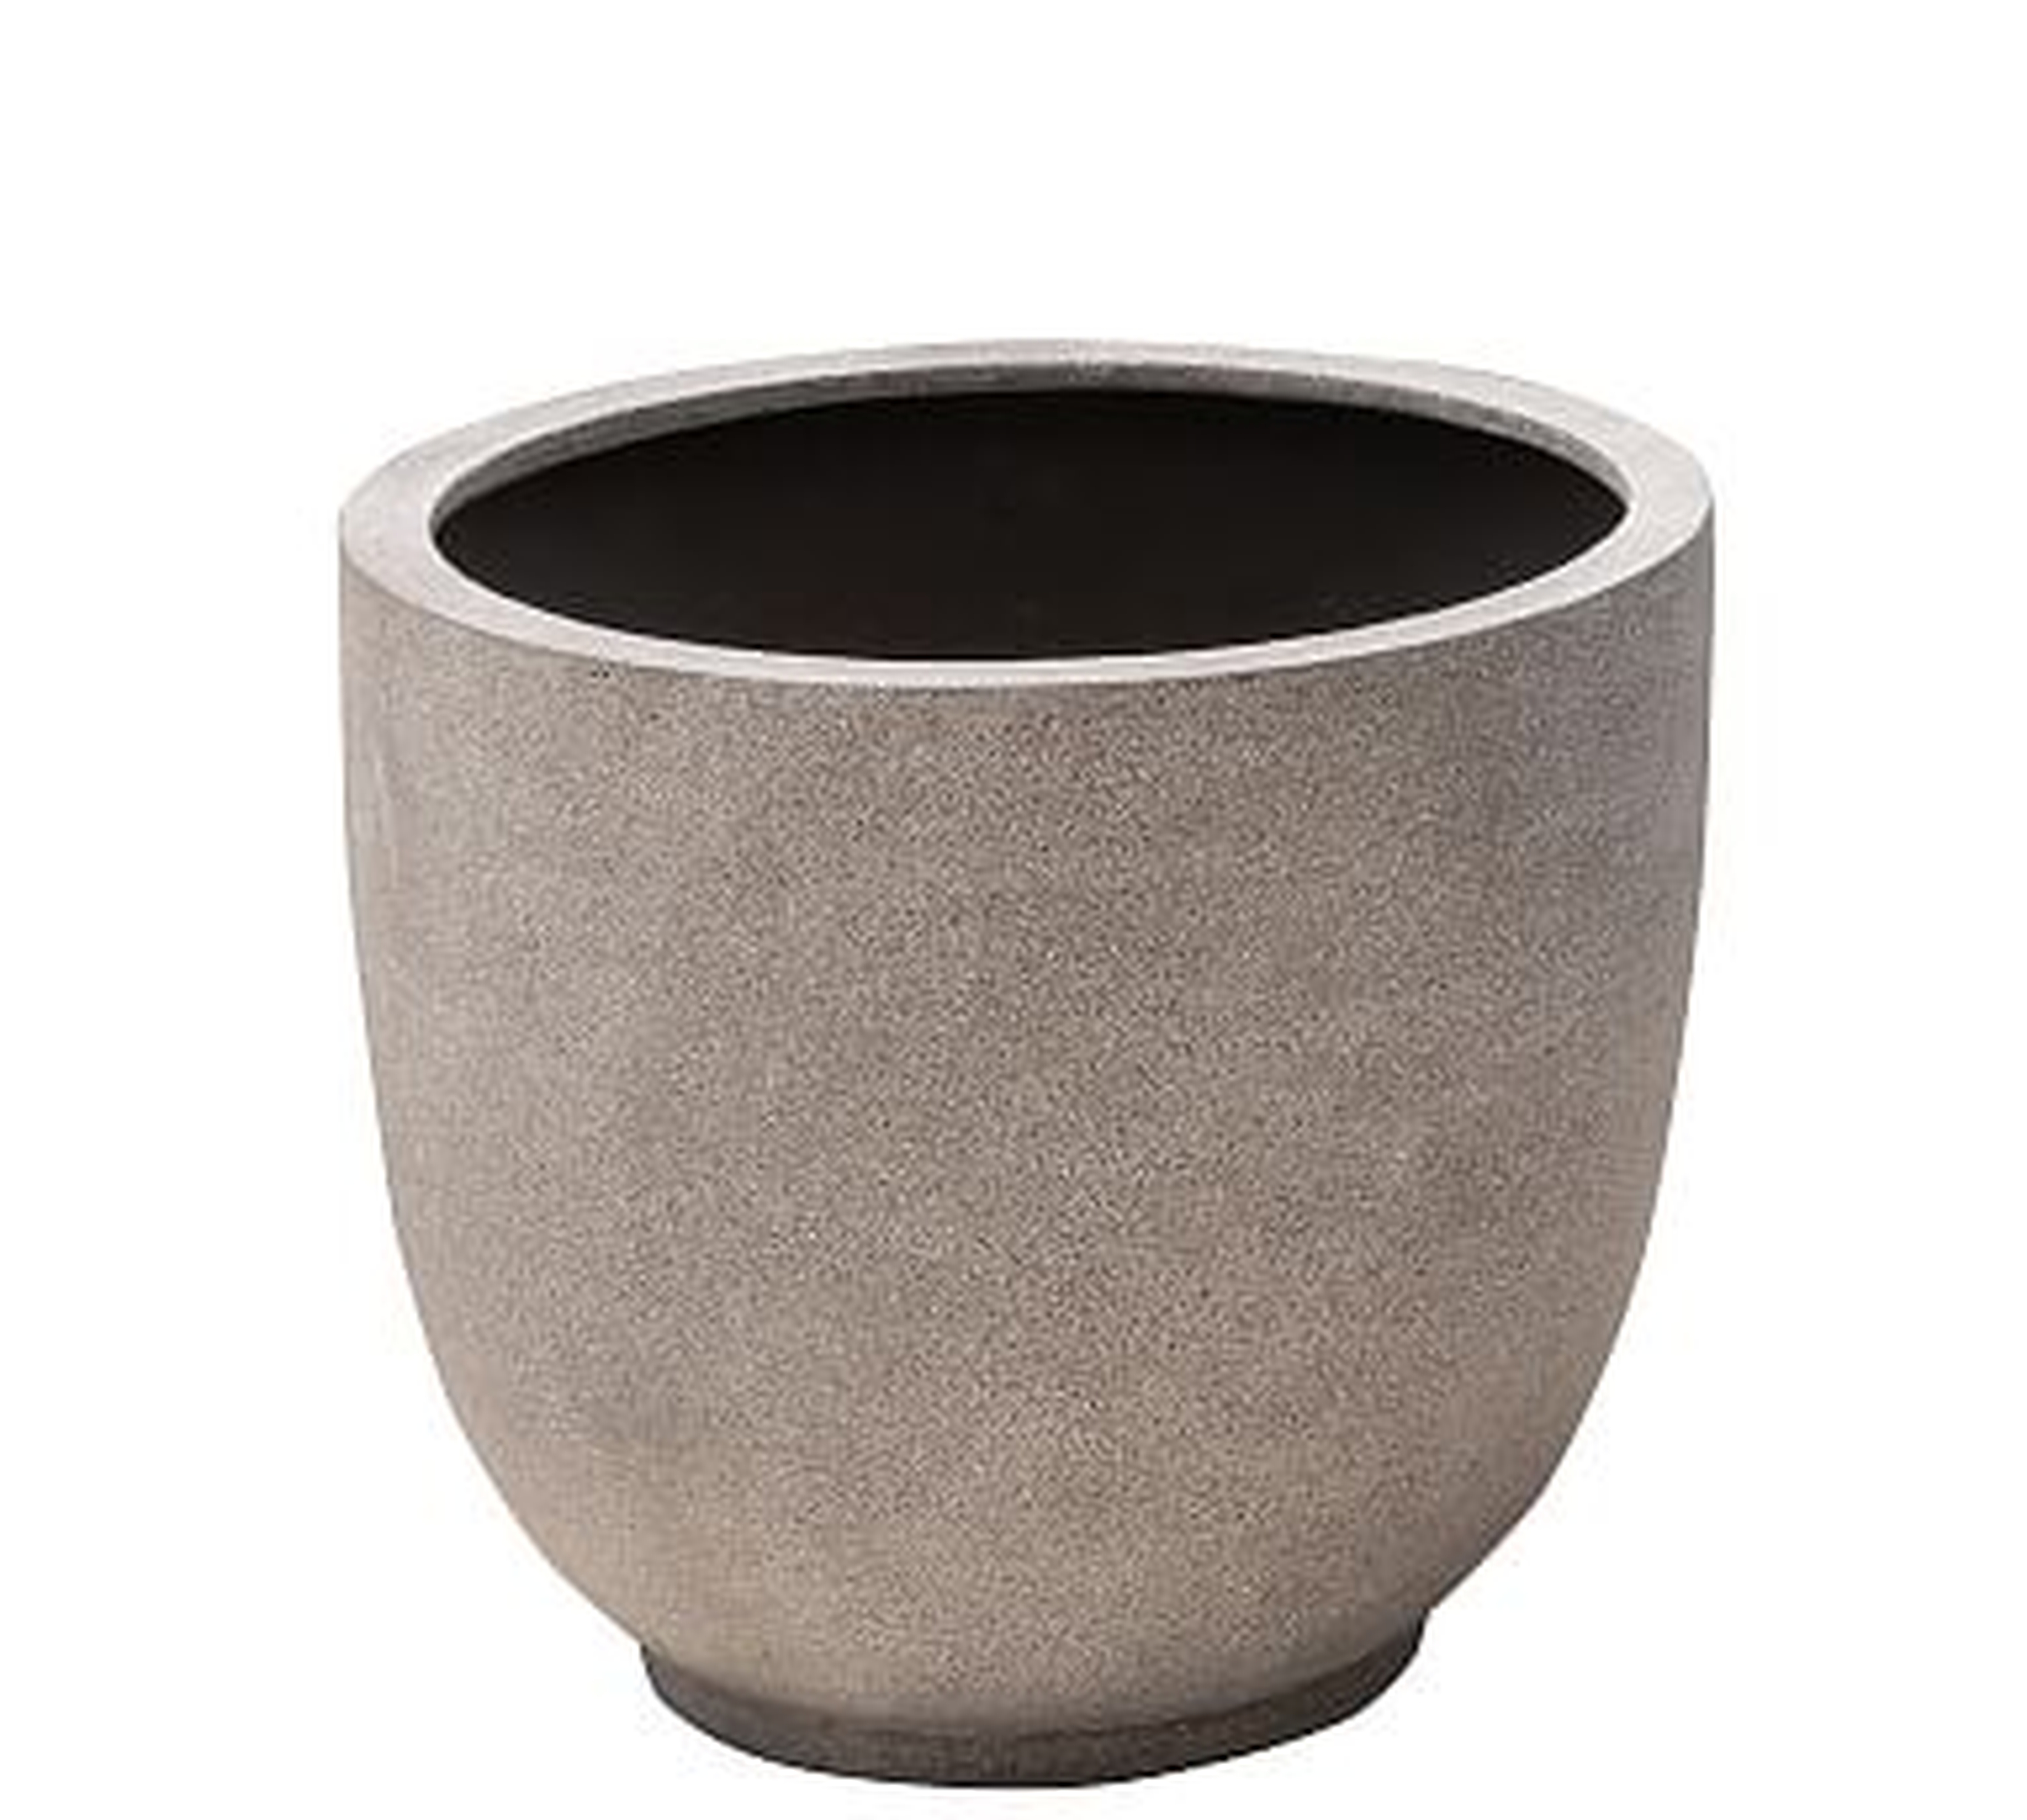 Theo Clay Planter, Light Gray - Medium - Pottery Barn